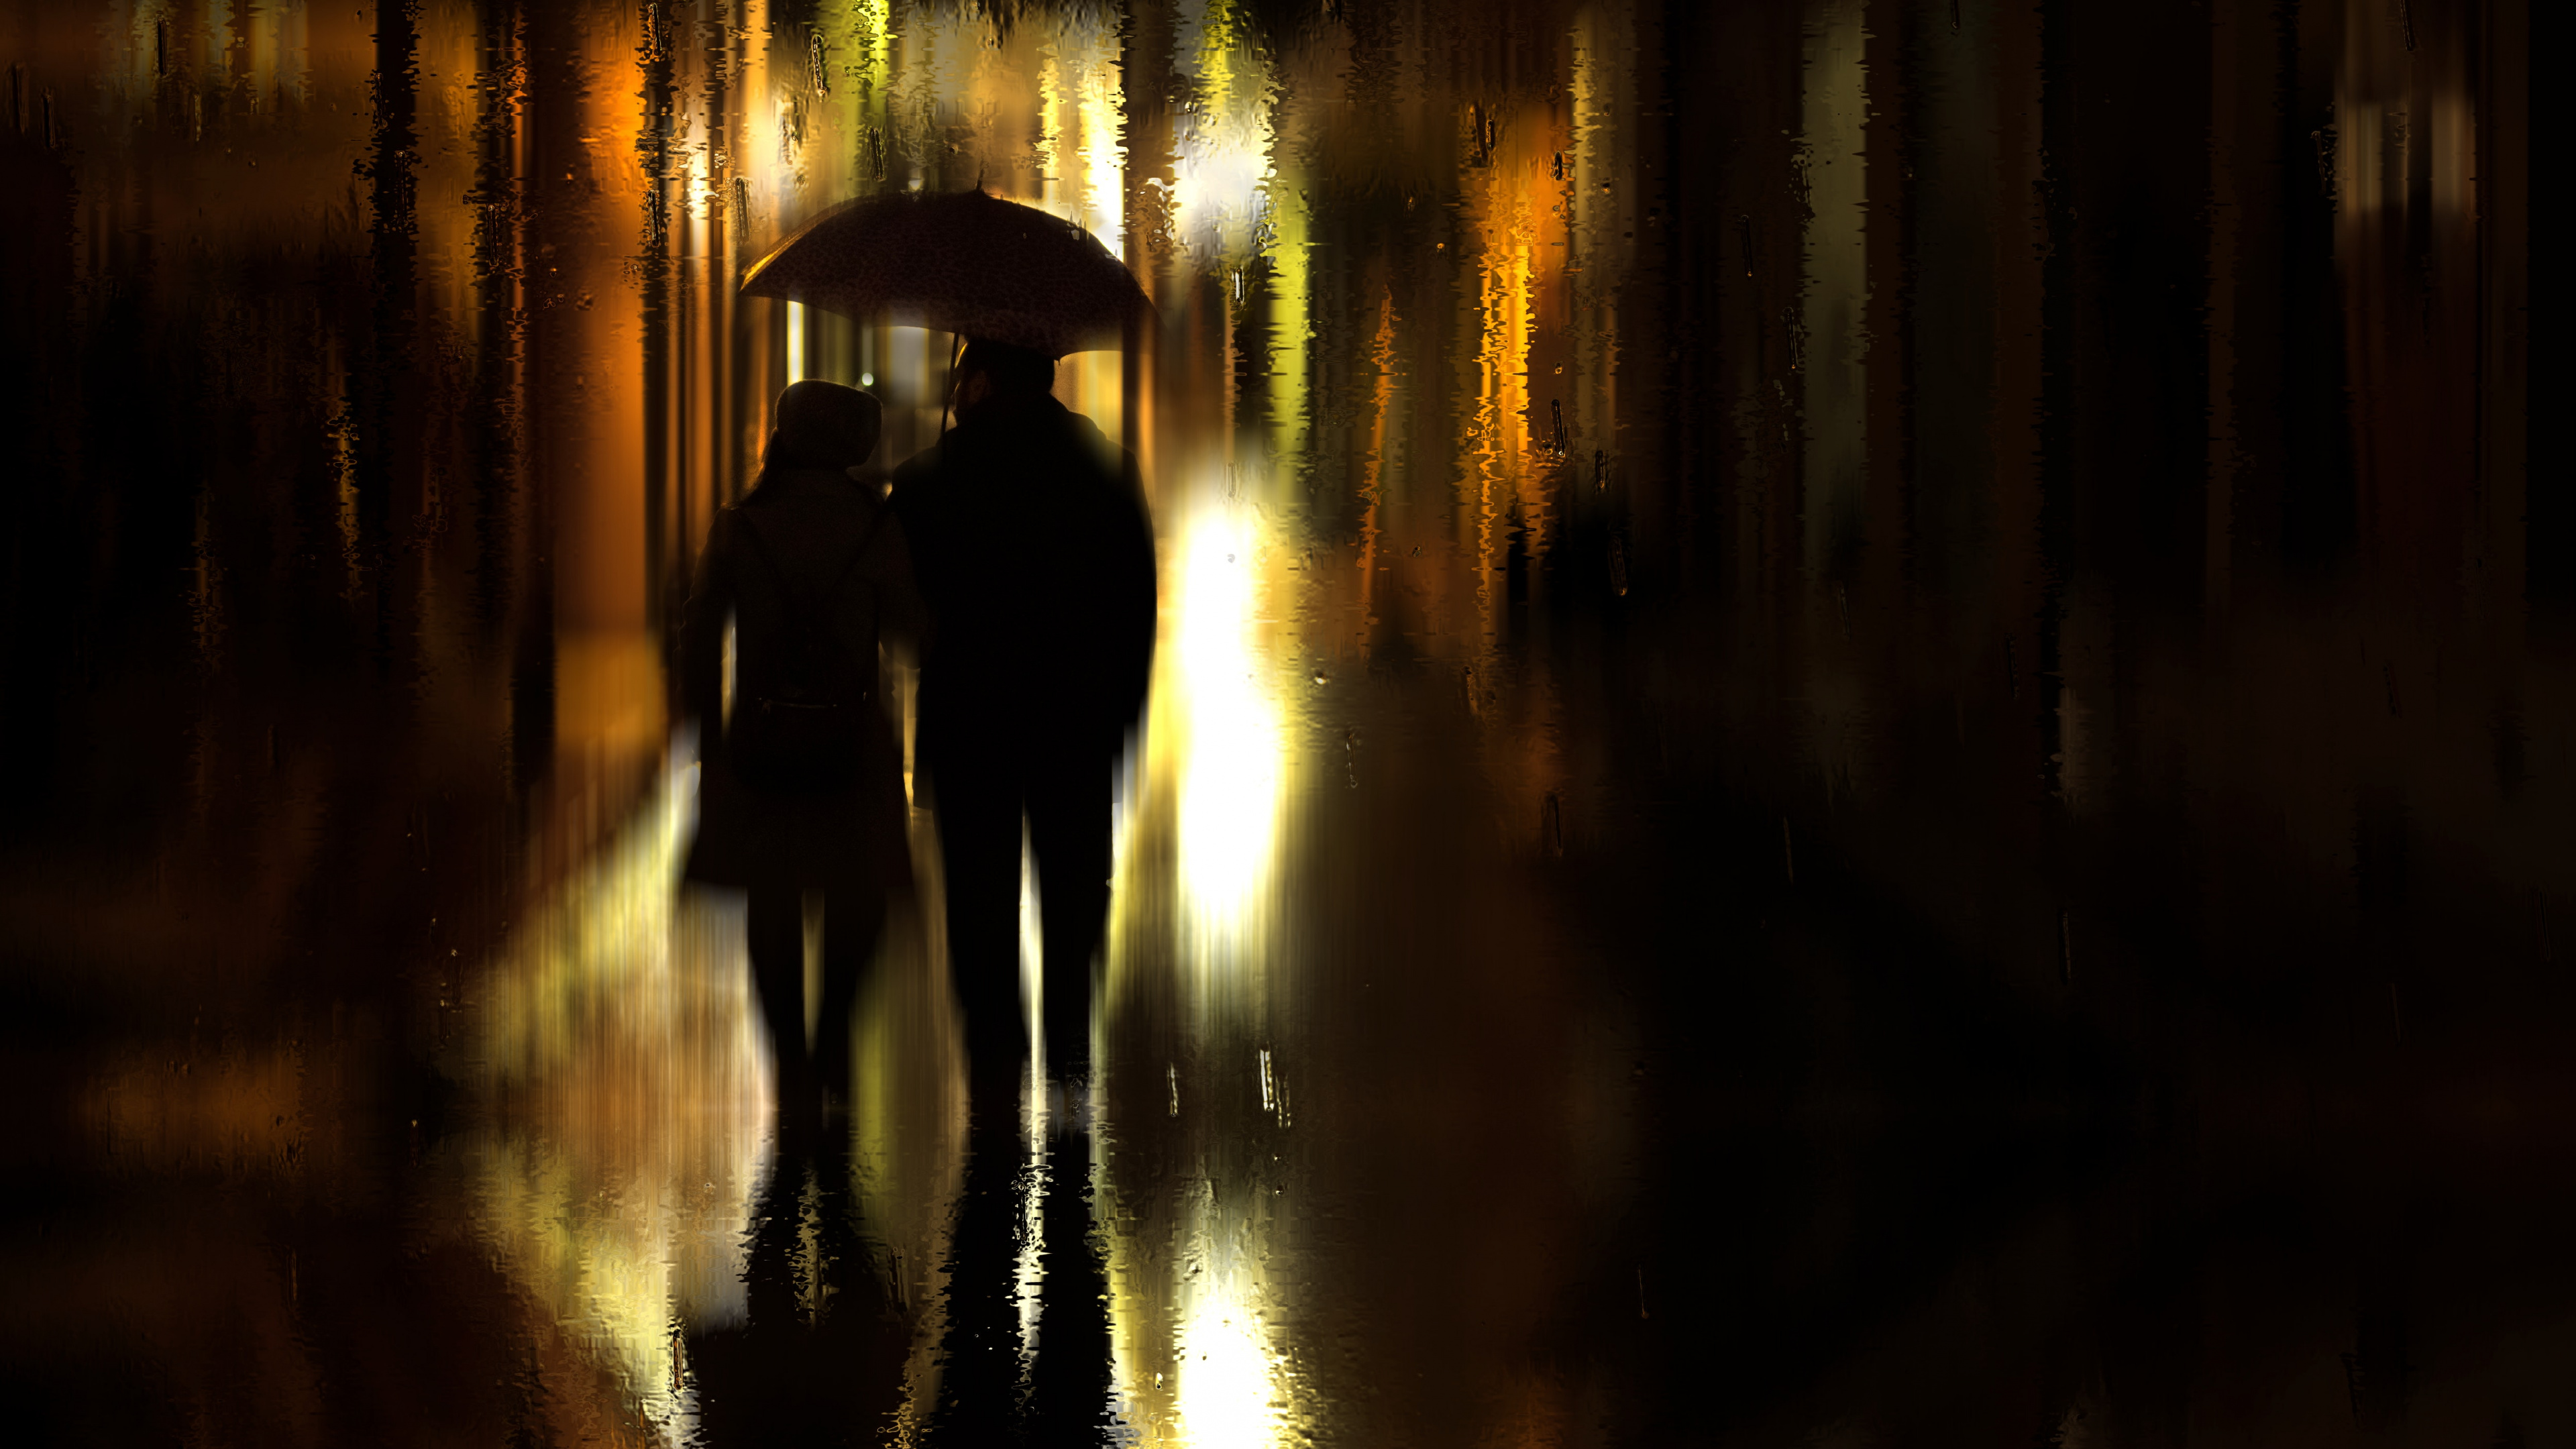 Regen, Reflexion, Nacht, Licht, Abend. Wallpaper in 3840x2160 Resolution